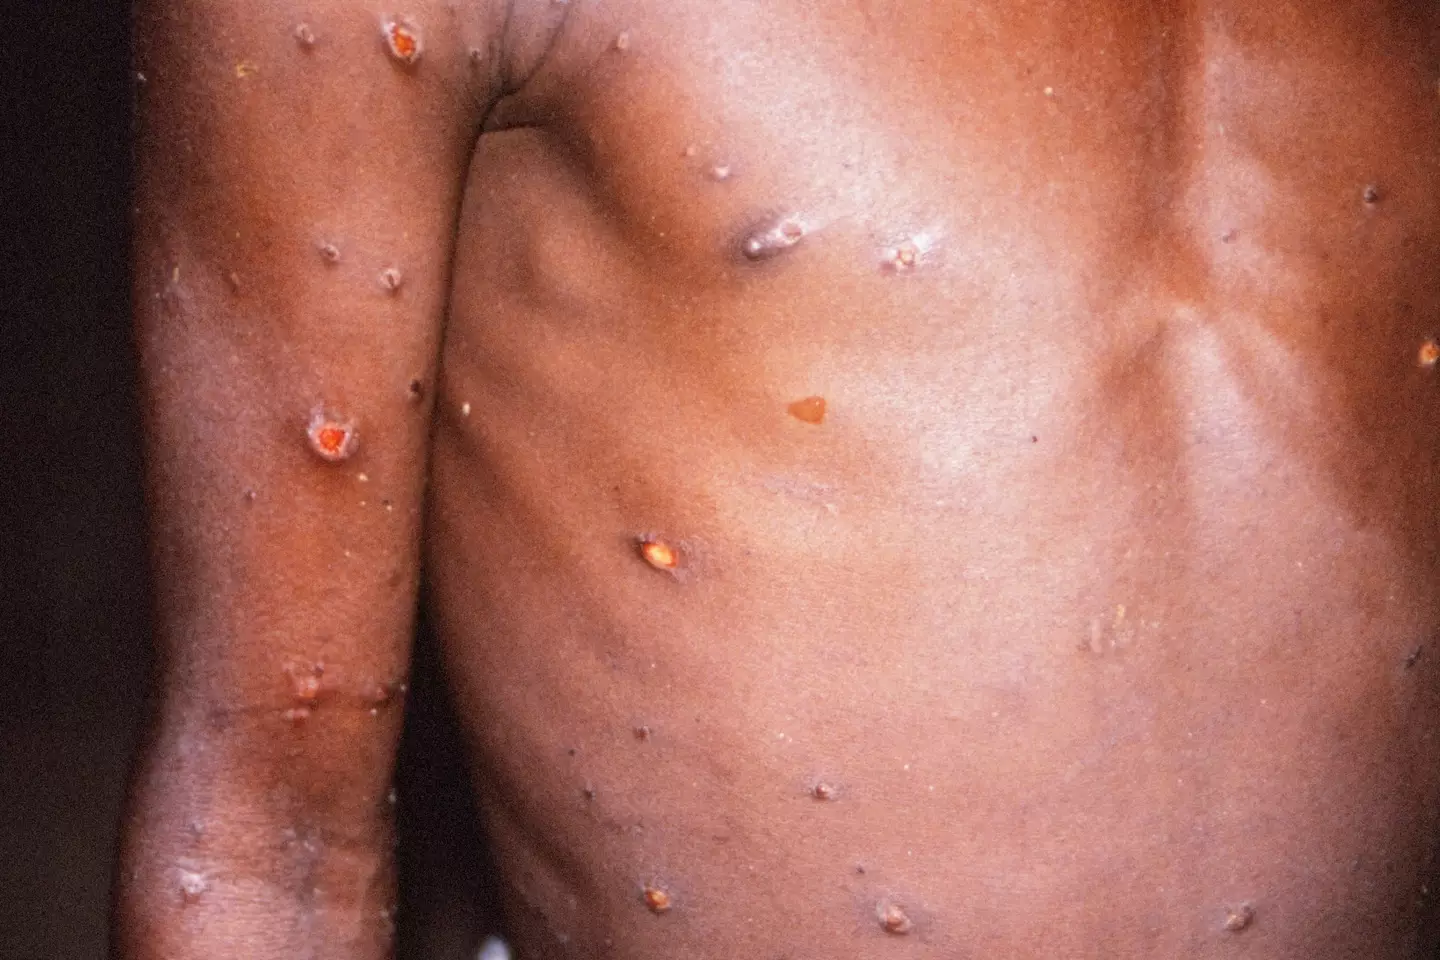 Monkeypox can spread via close contact.